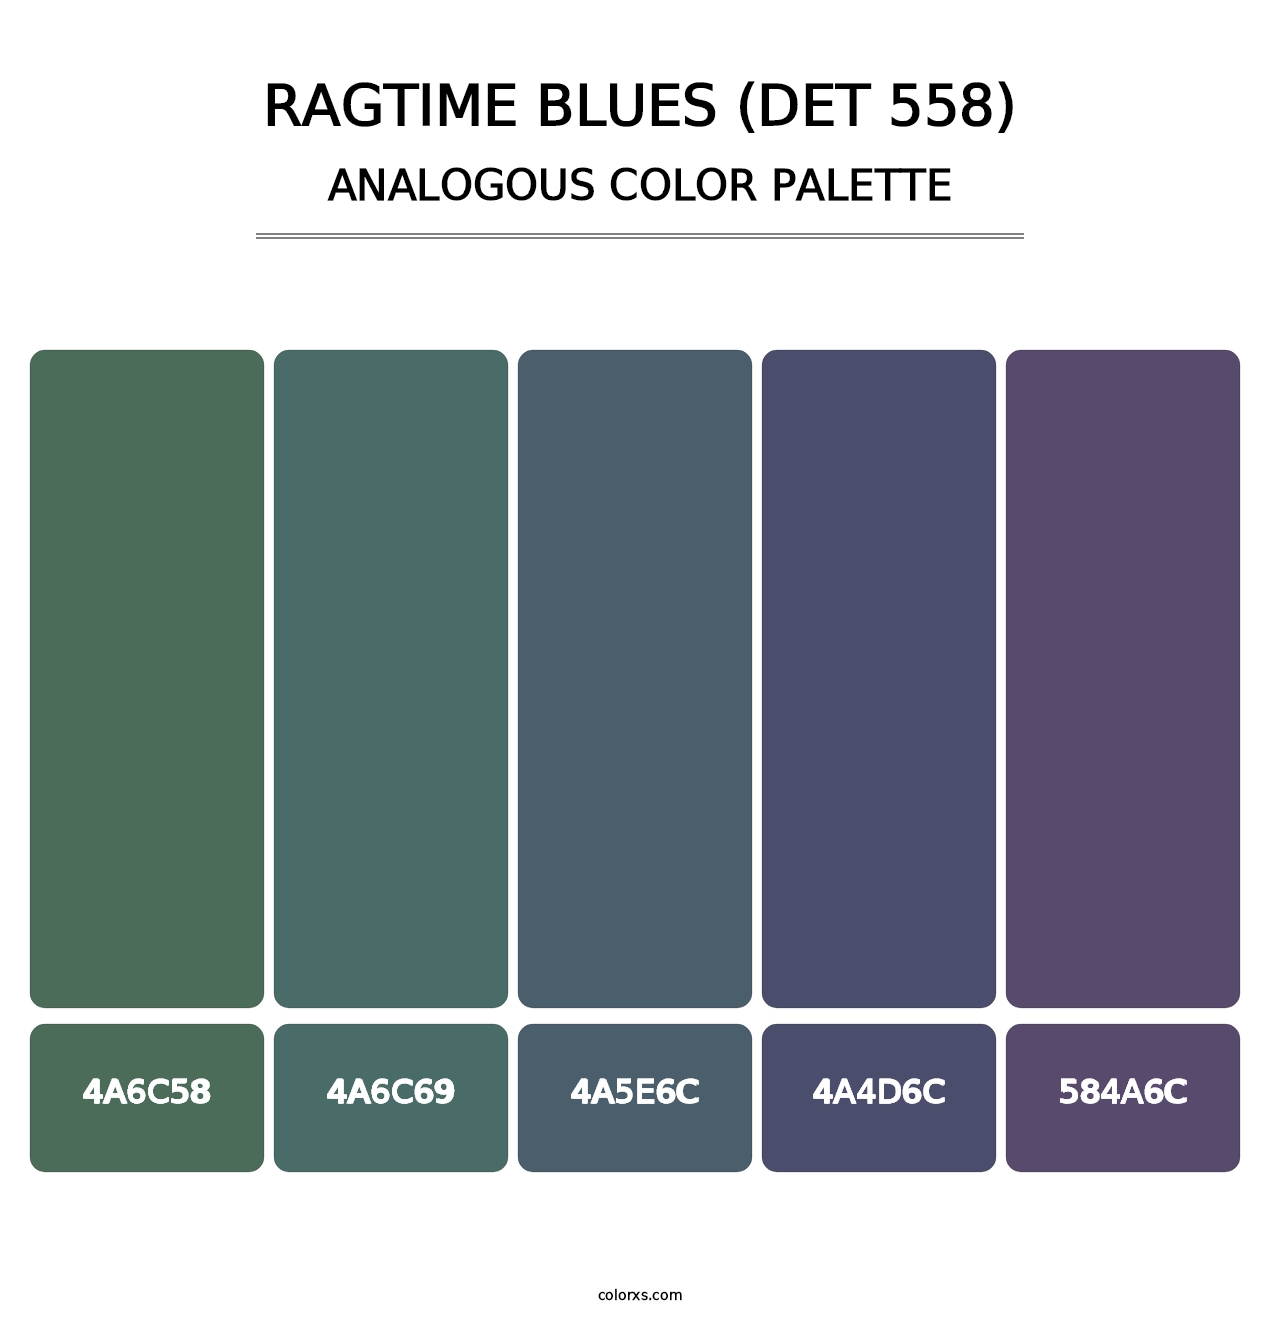 Ragtime Blues (DET 558) - Analogous Color Palette